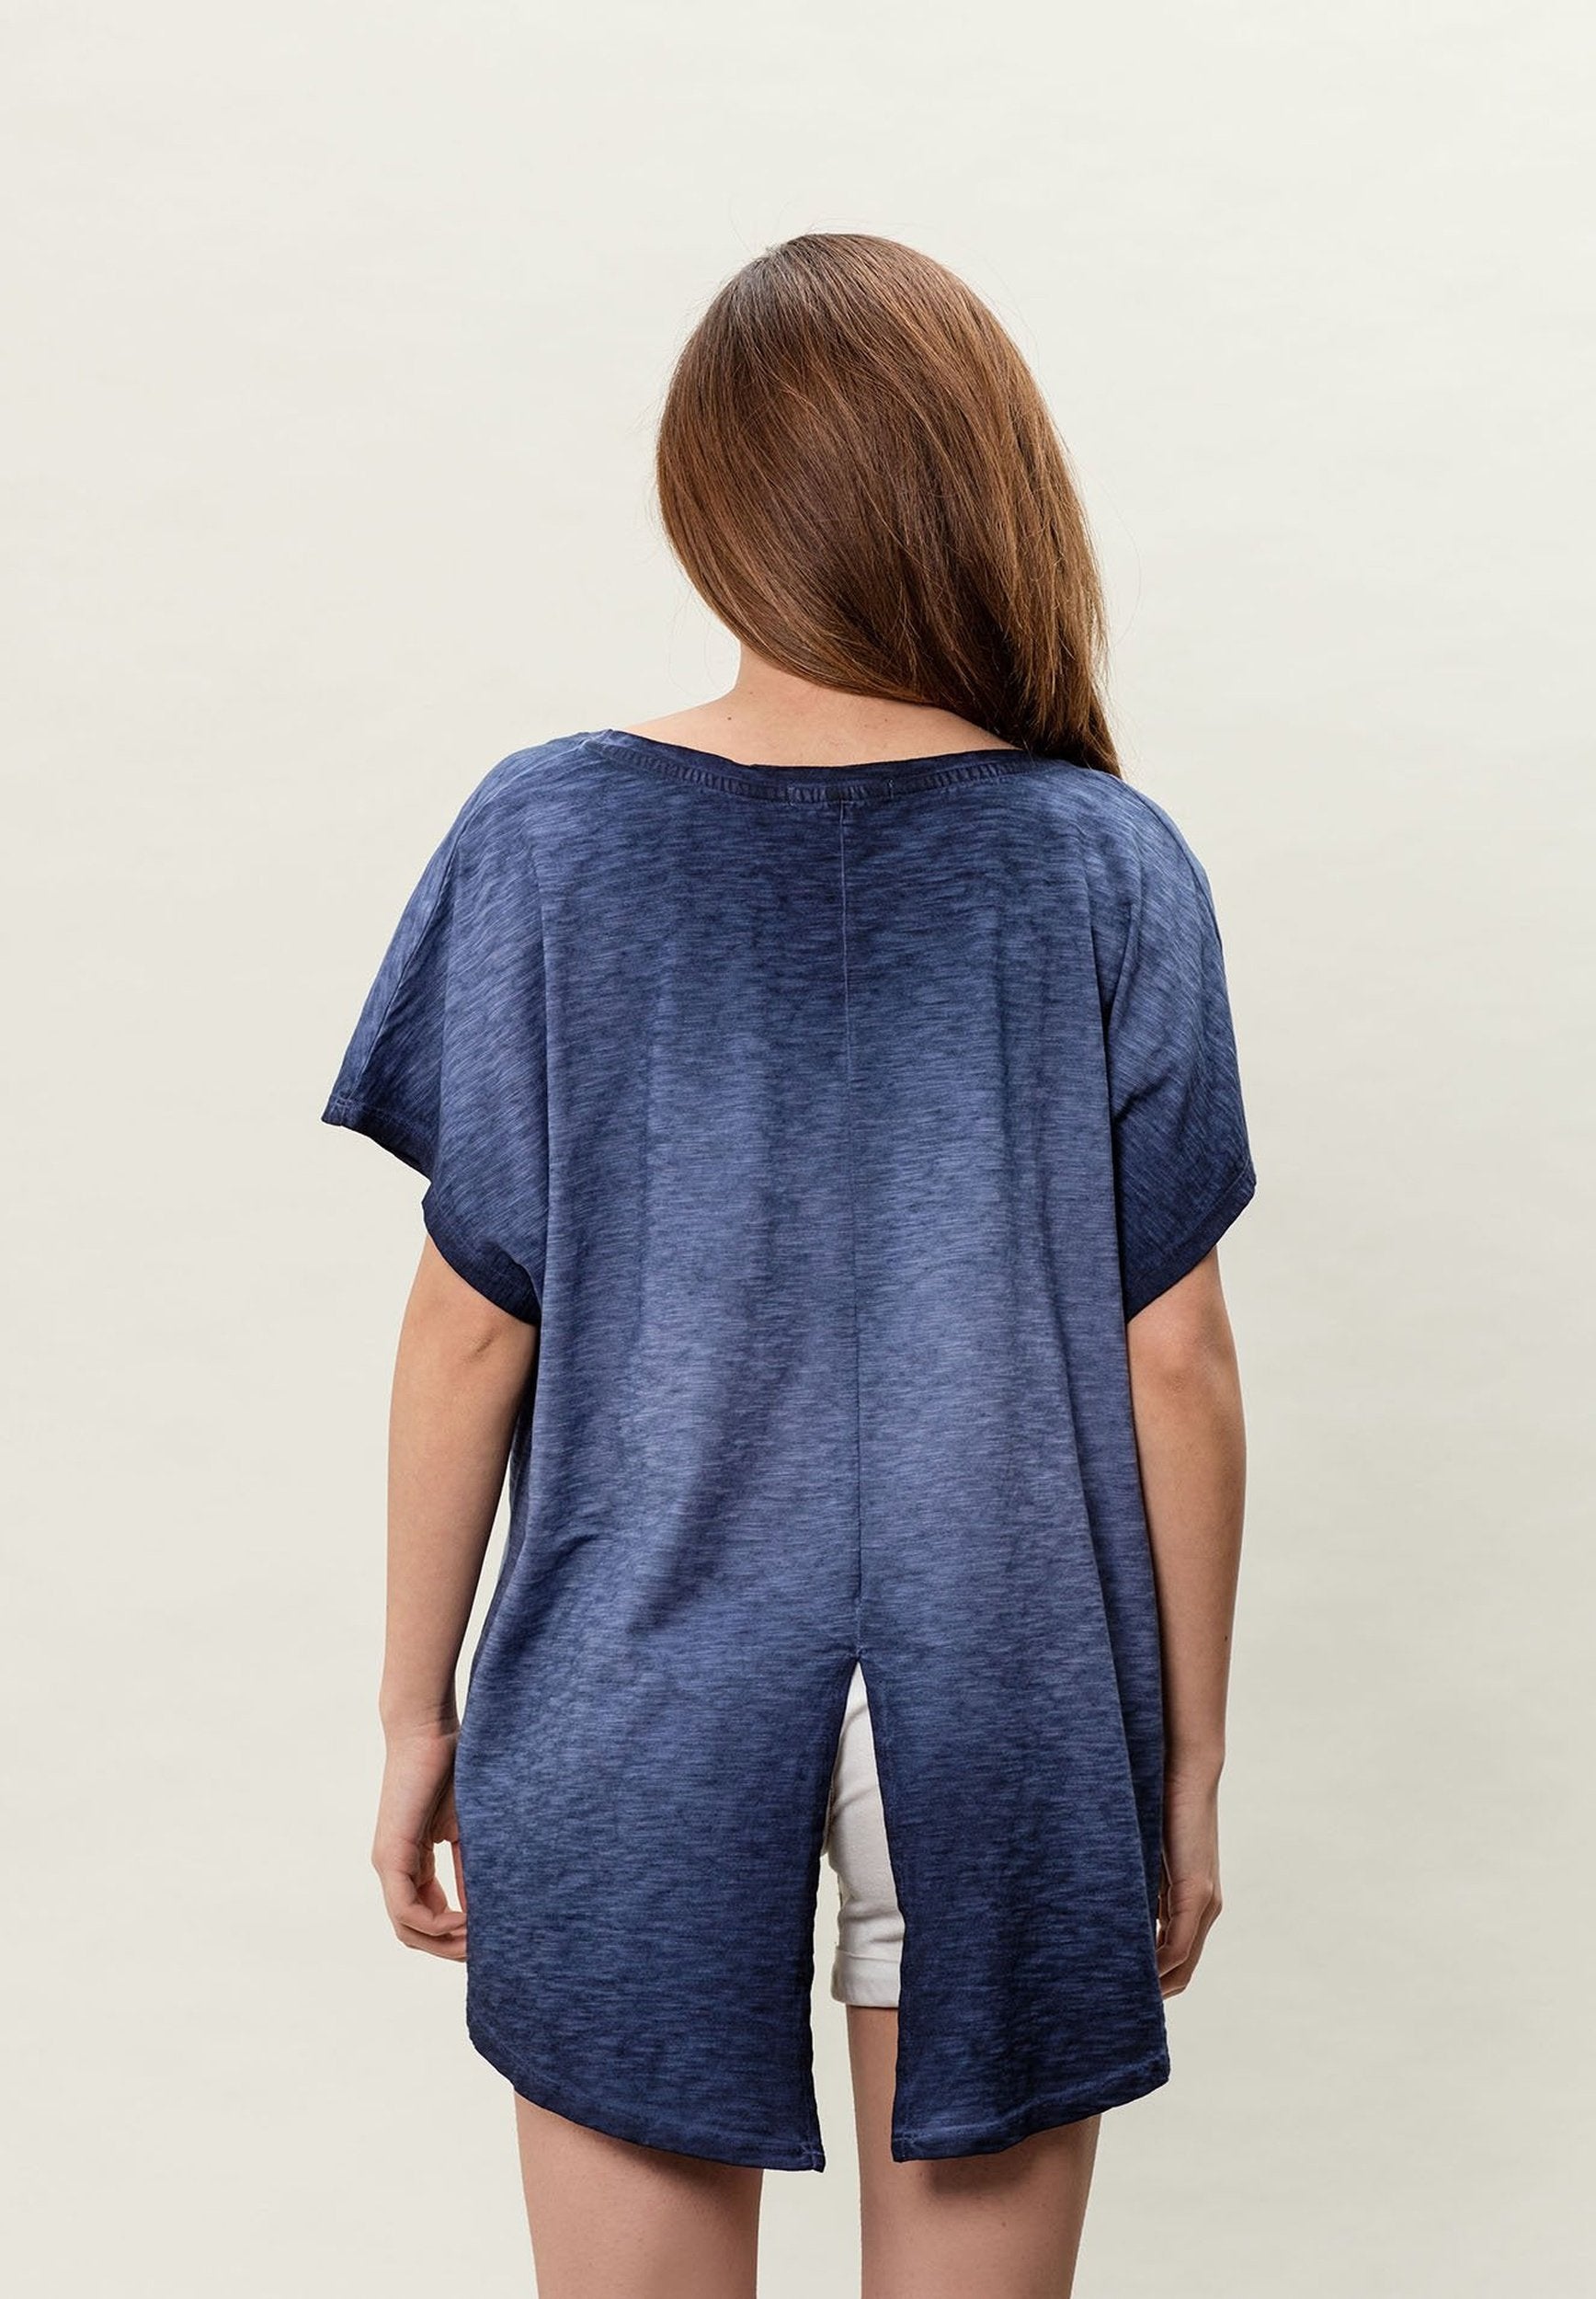 Damen Cold Pigment Dyed T-Shirt aus Bio-Baumwolle